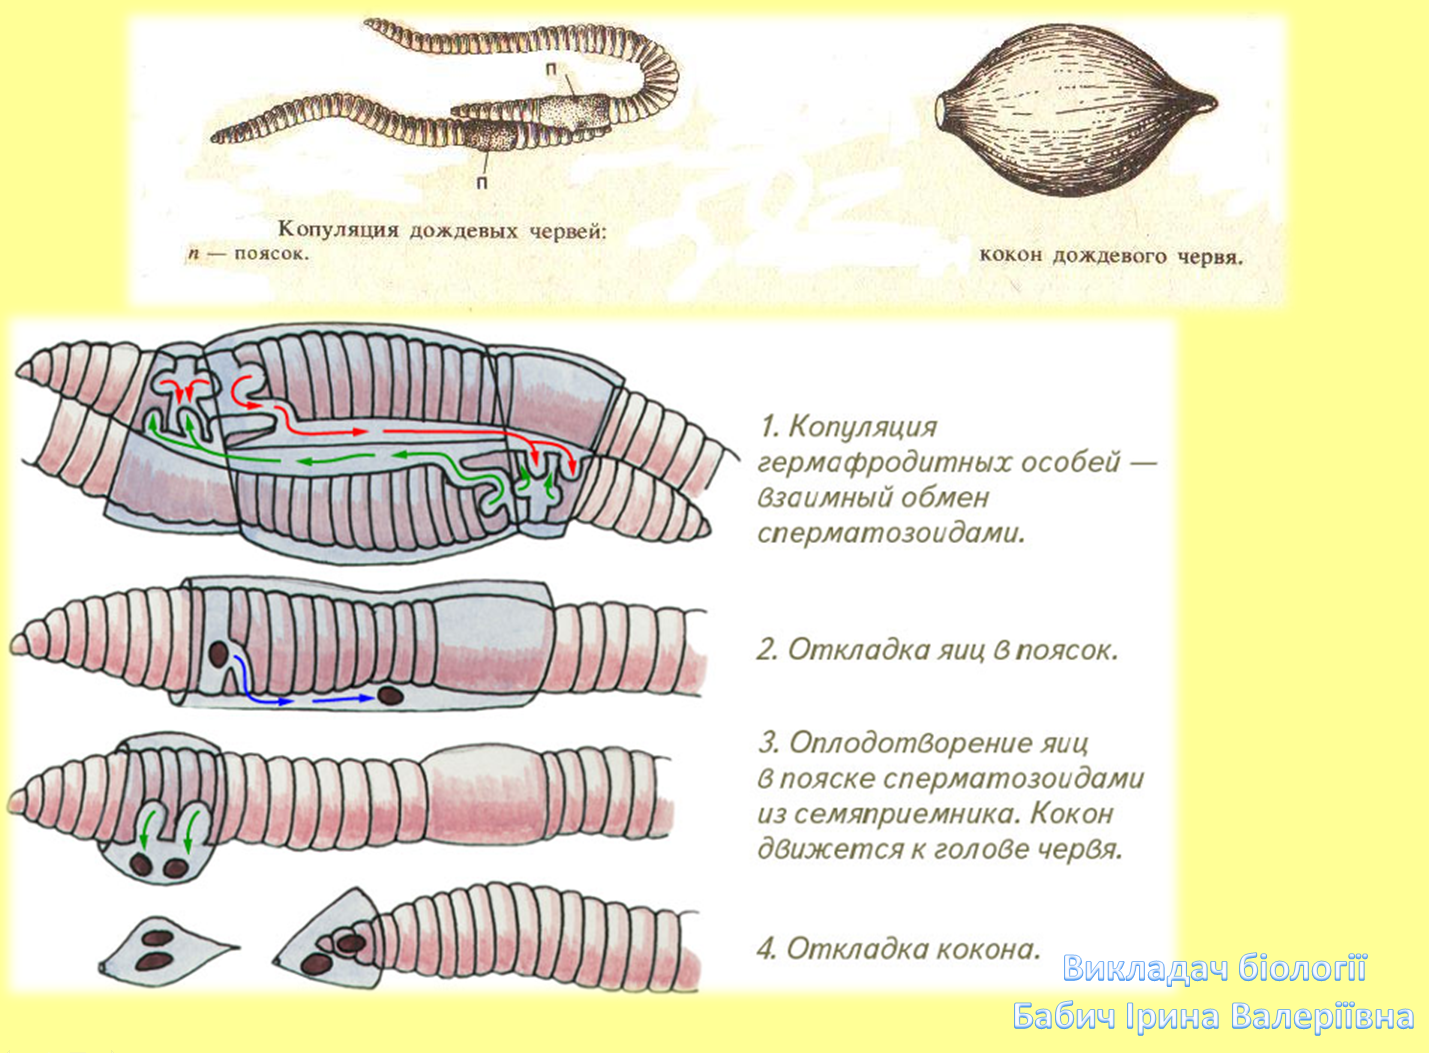 Сегмент дождевого червя. Параподии у малощетинковых червей. Половая система дождевого червя. Схема размножения кольчатых червей. Строение половой системы дождевого червя.